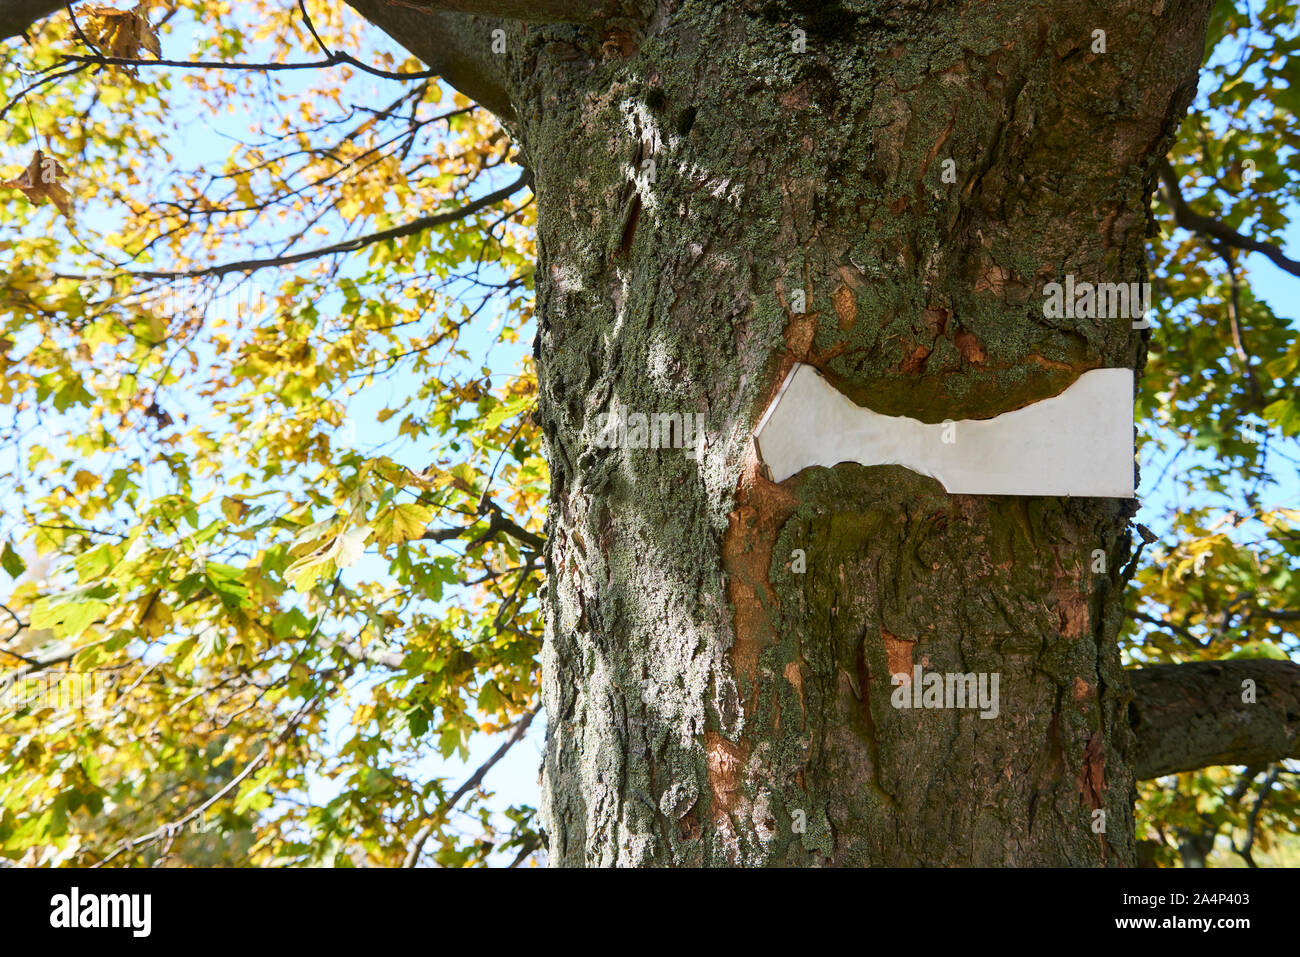 Segno bloccato all'interno di albero che cresce intorno esso. Alberi visibili sullo sfondo, il tronco incapsula il segno vuoto della piastra Foto Stock